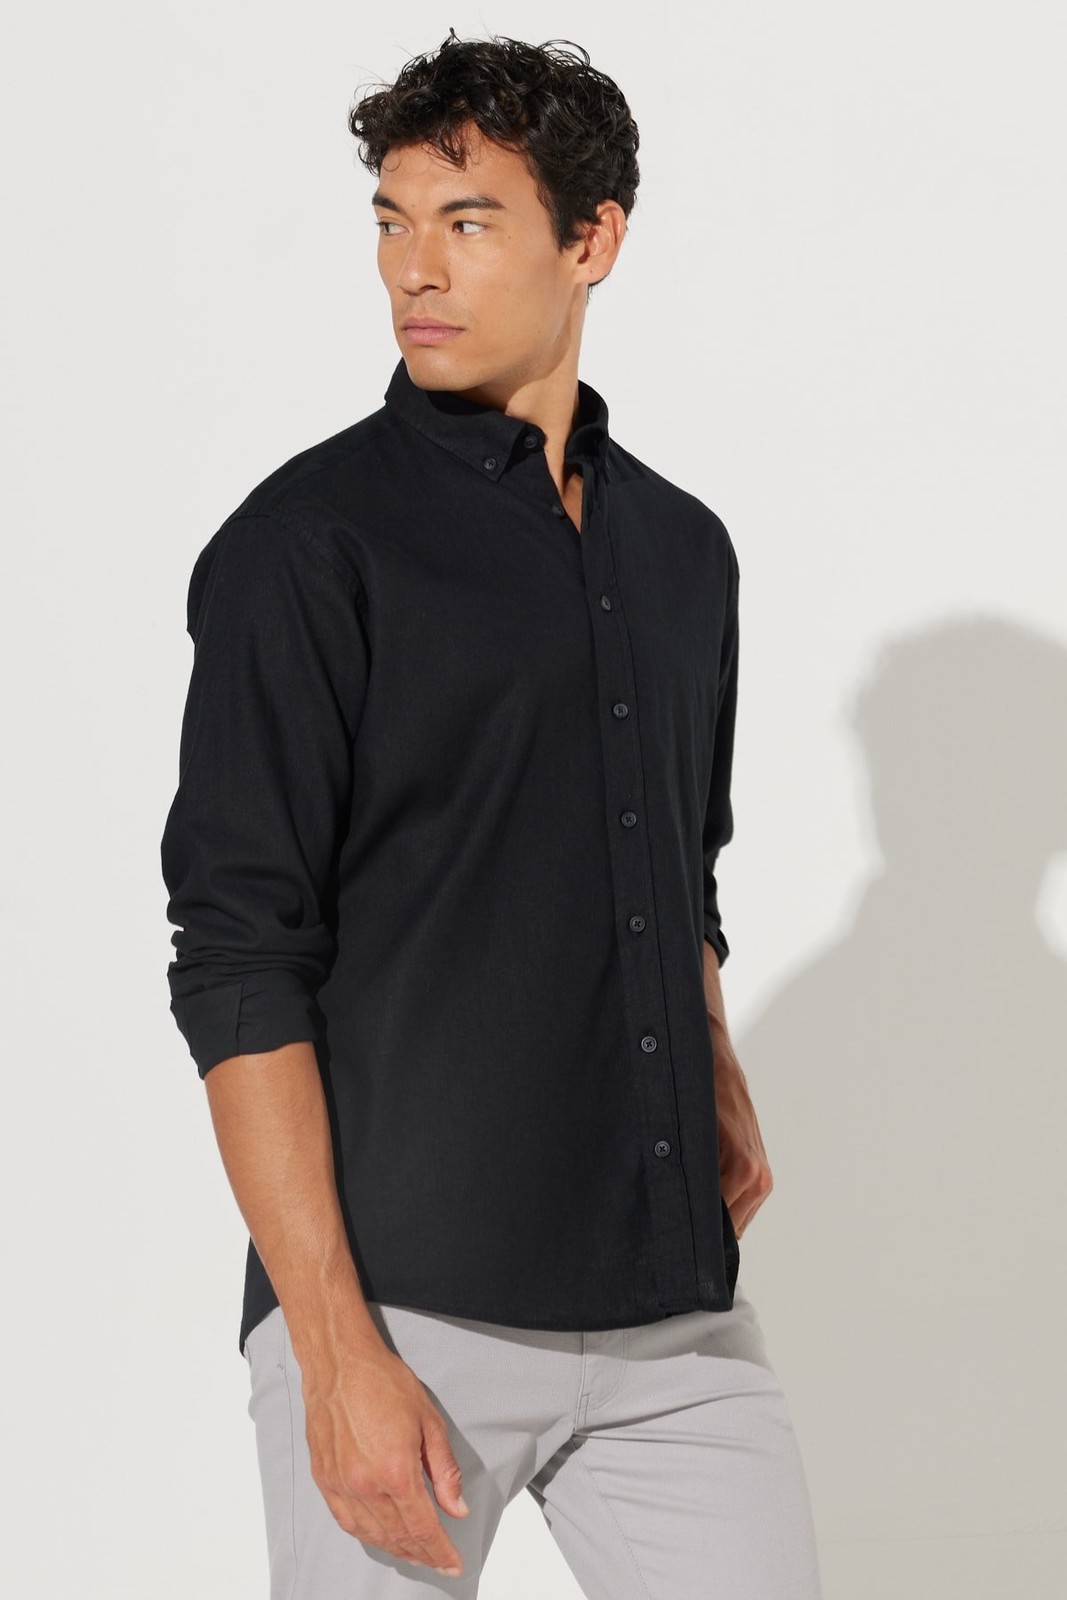 ALTINYILDIZ CLASSICS Men's Black Comfort Fit Comfy Cut Buttoned Collar Linen Shirt.